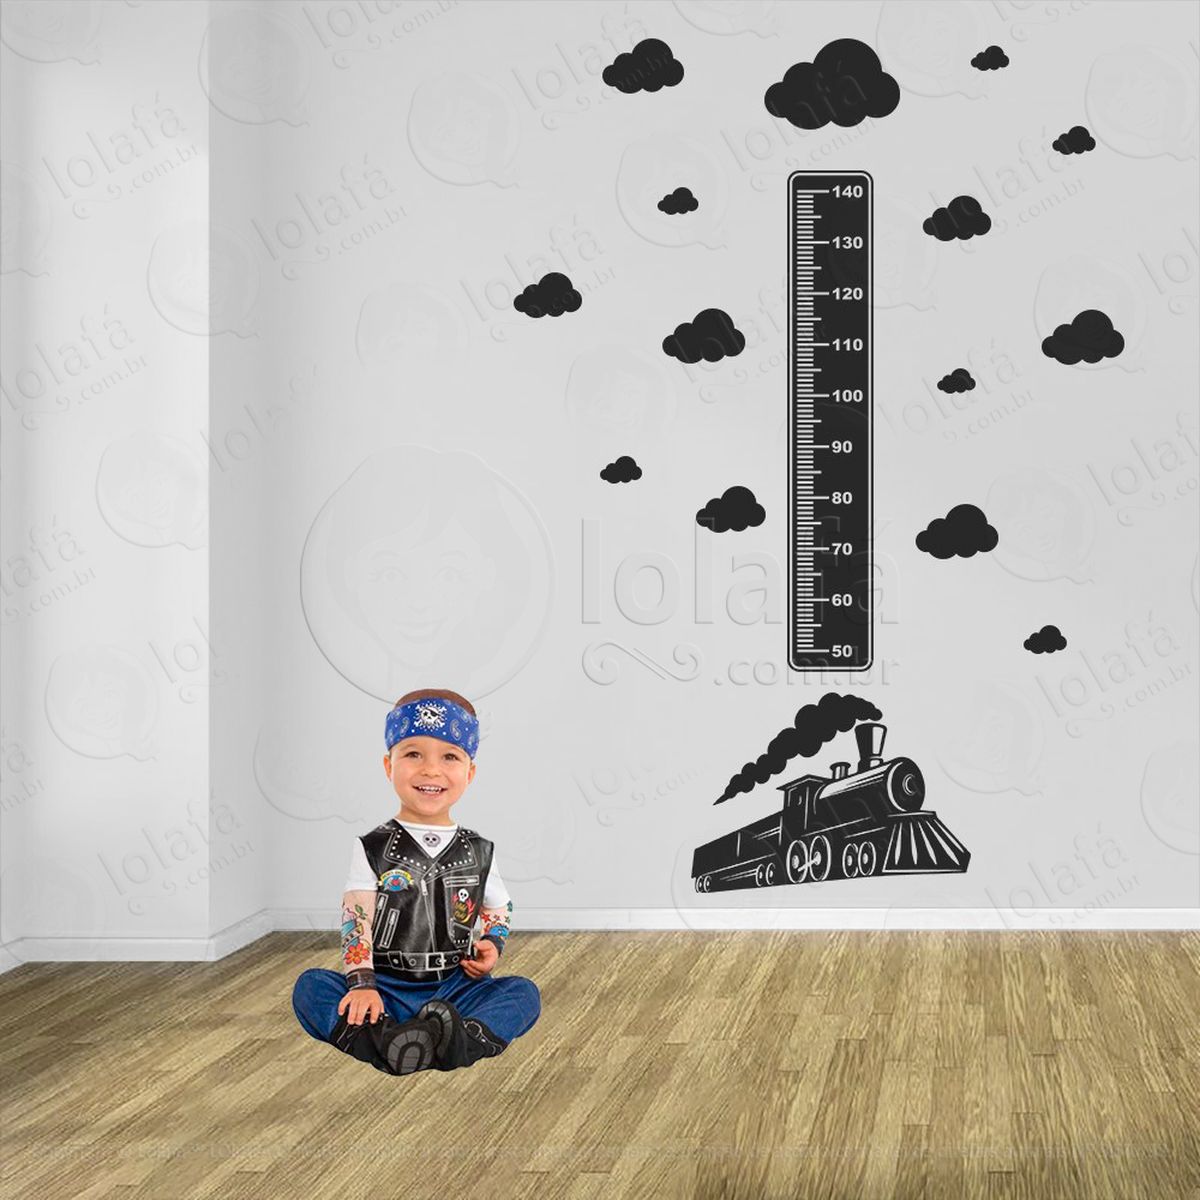 trêm e nuvens adesivo régua de crescimento infantil, medidor de altura para quarto, porta e parede - mod:1501